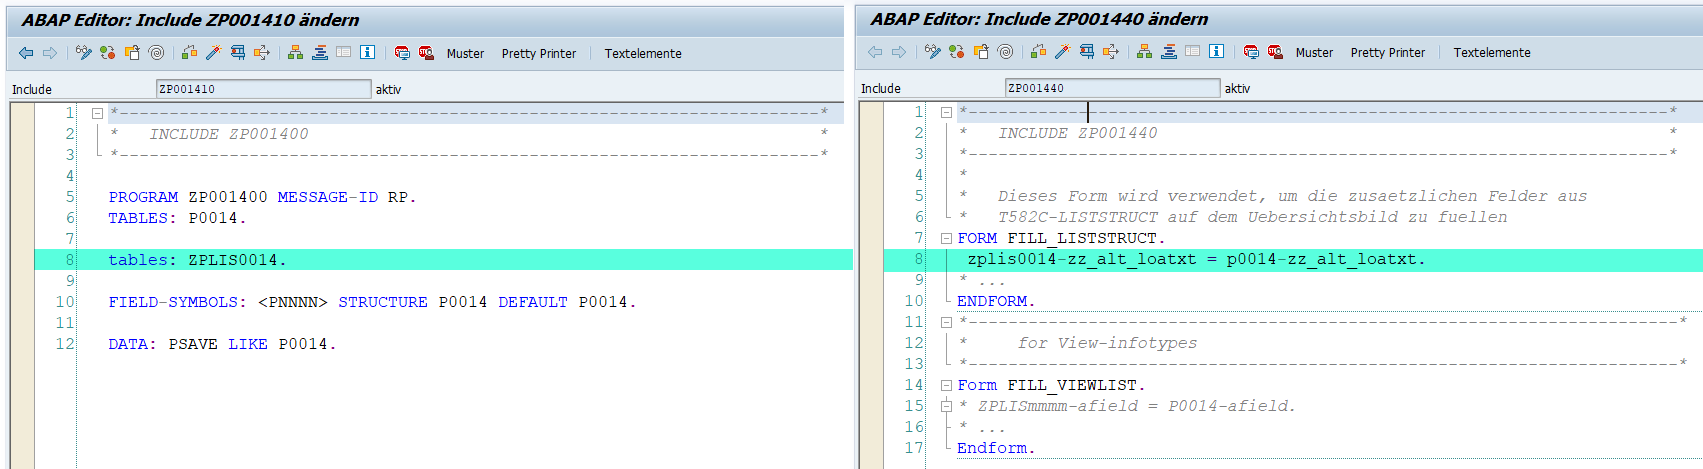 Modulpool-Erweiterung für zusätzliche Listbild-Felder für Infotyp 0014 im SAP HCM